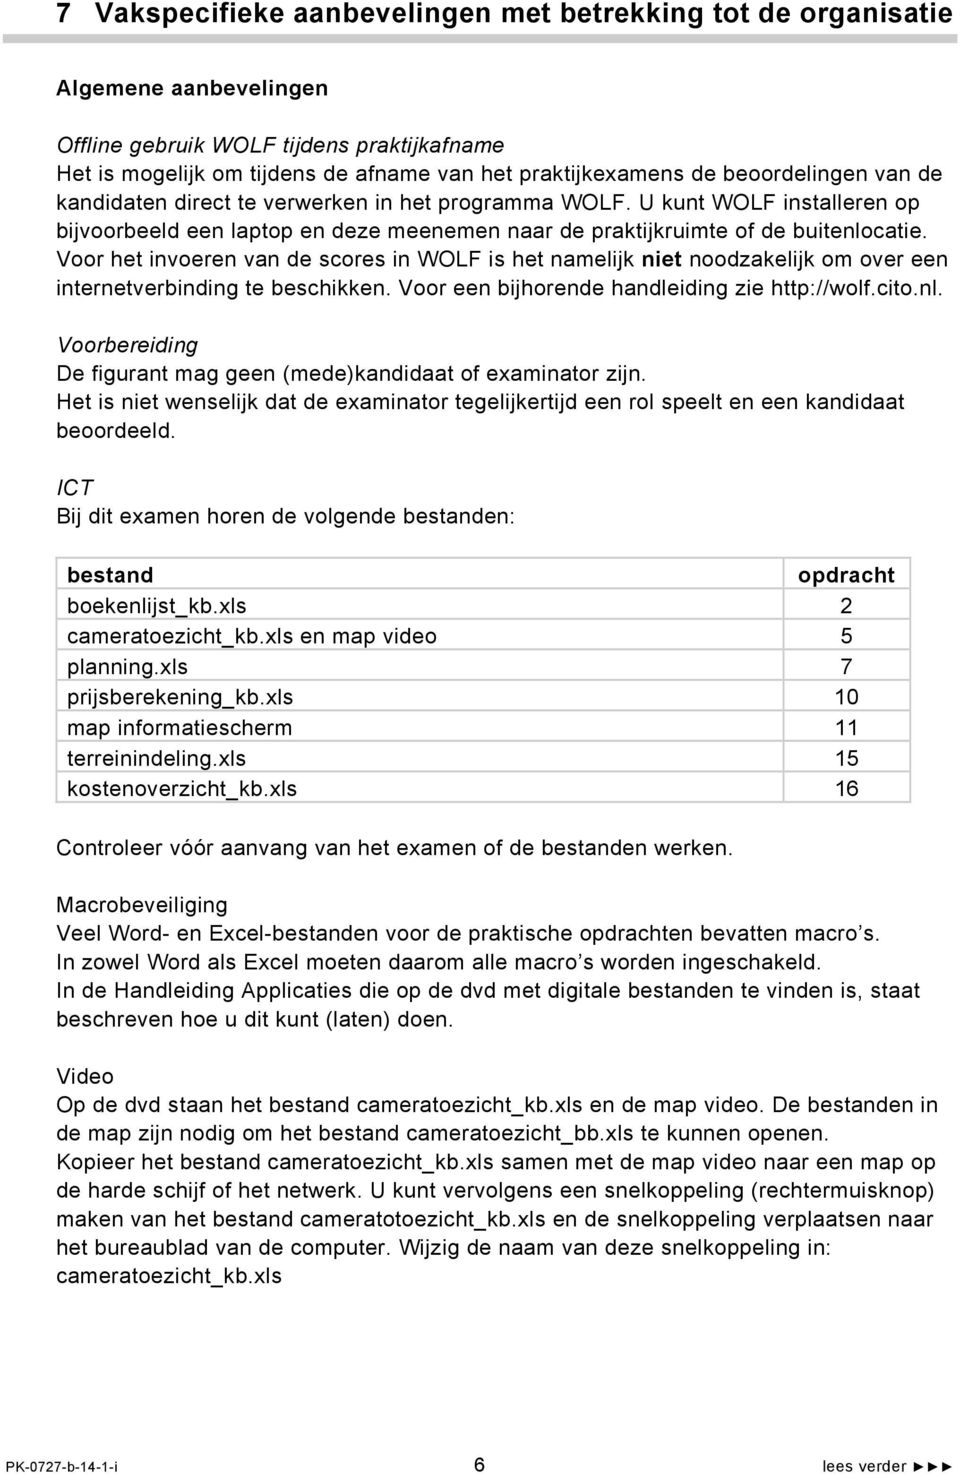 Voor het invoeren van de scores in WOLF is het namelijk niet noodzakelijk om over een internetverbinding te beschikken. Voor een bijhorende handleiding zie http://wolf.cito.nl.